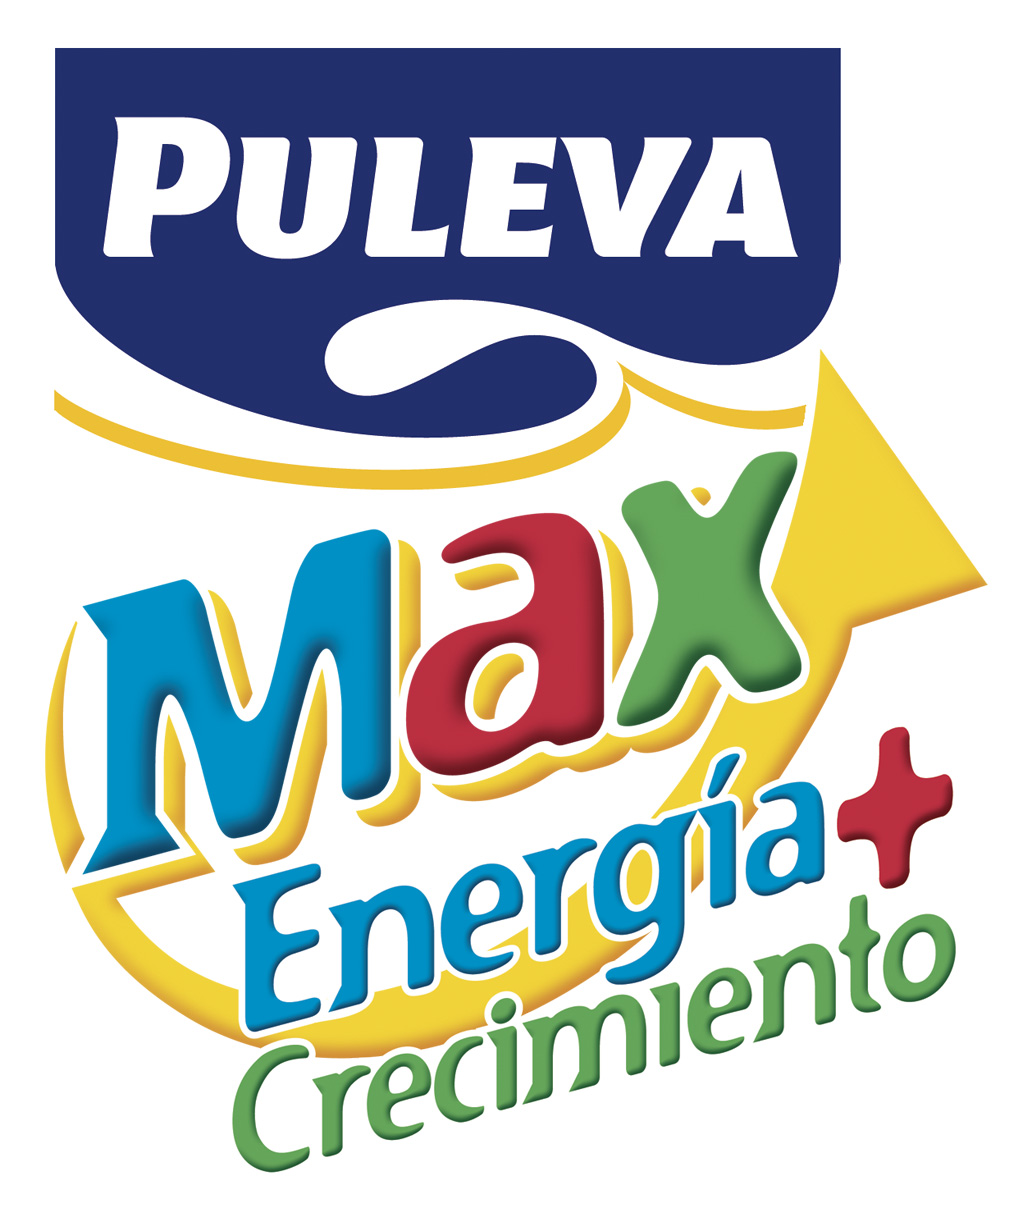 PULEVA MAX ENERGIA Y CRECIMIENTO